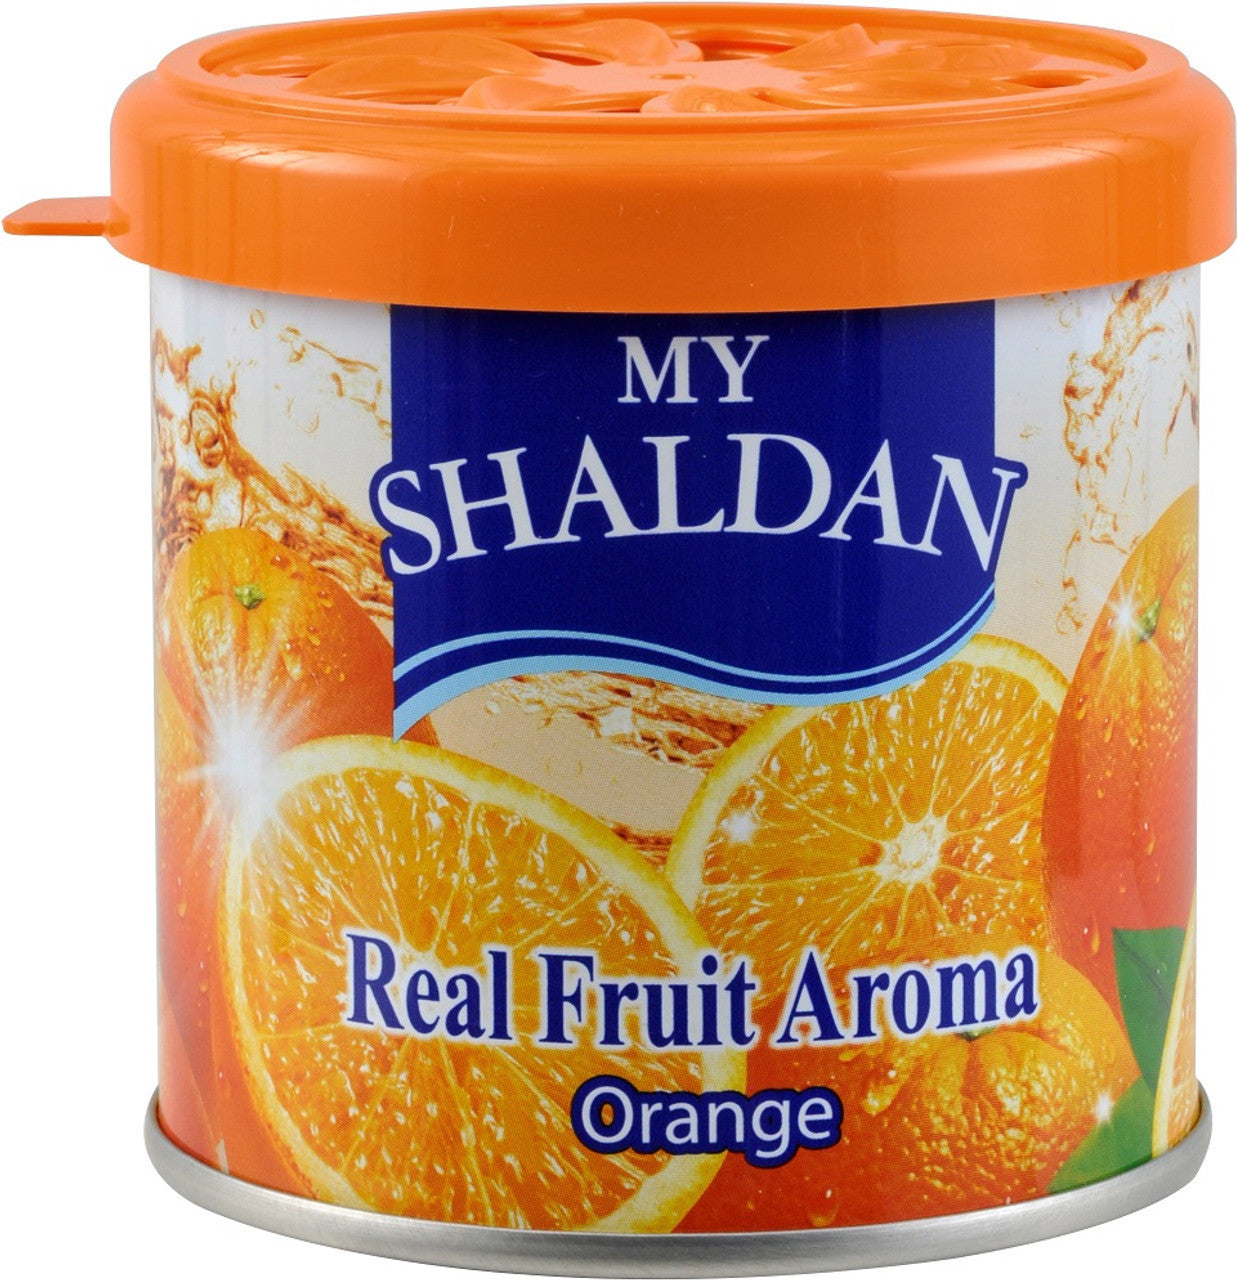 My Shaldan Air Freshener V8 Original Formula, Orange Scent, 72 cans